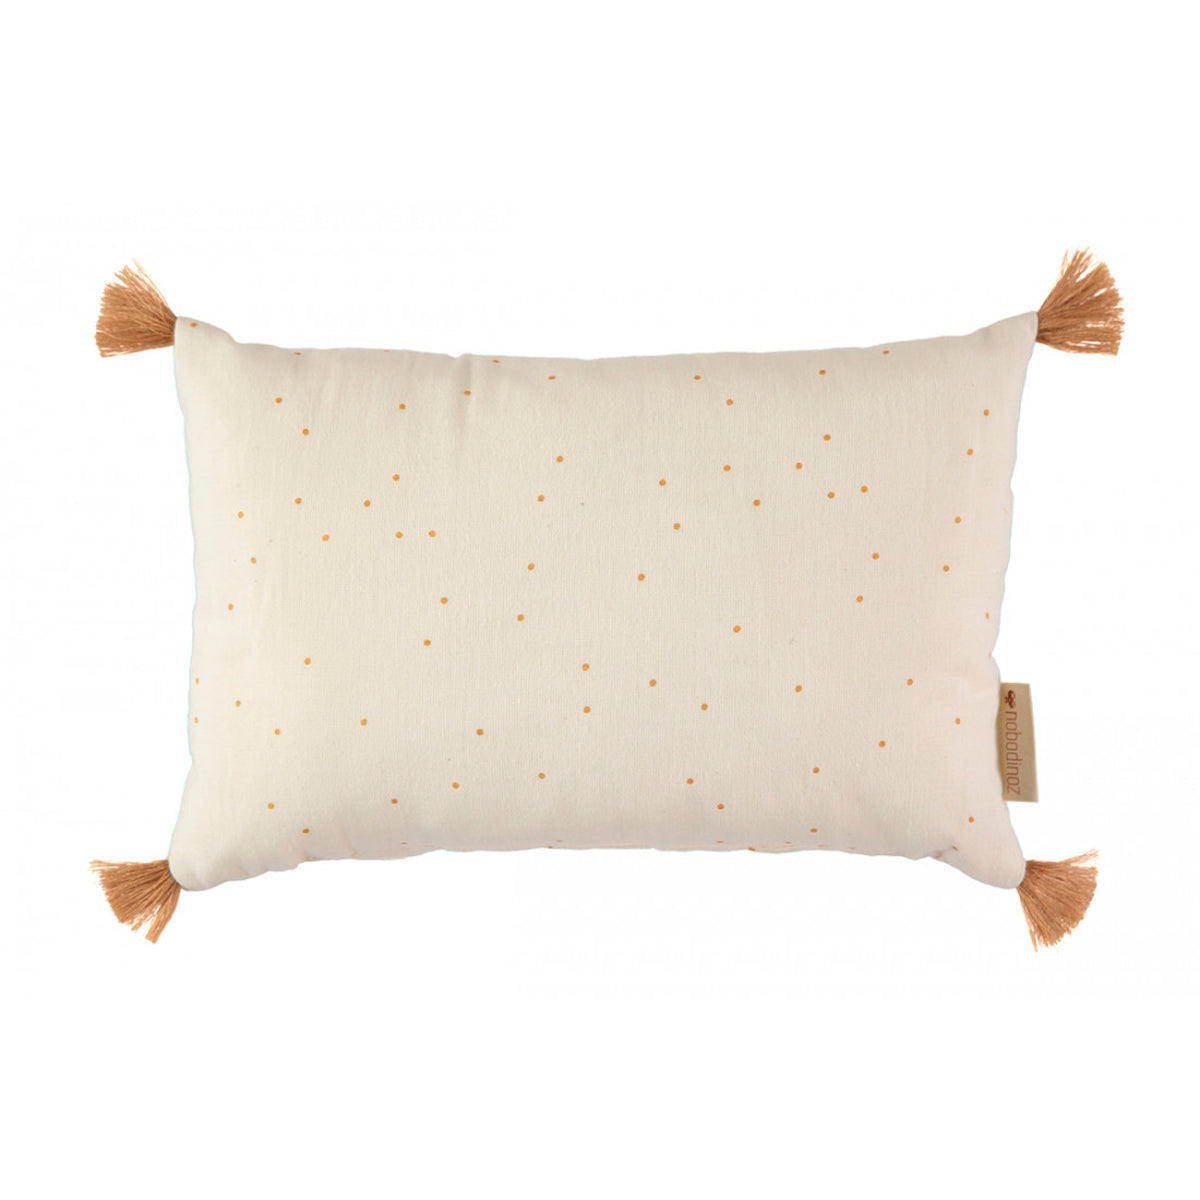 Sublim cushion • honey sweet dots natural